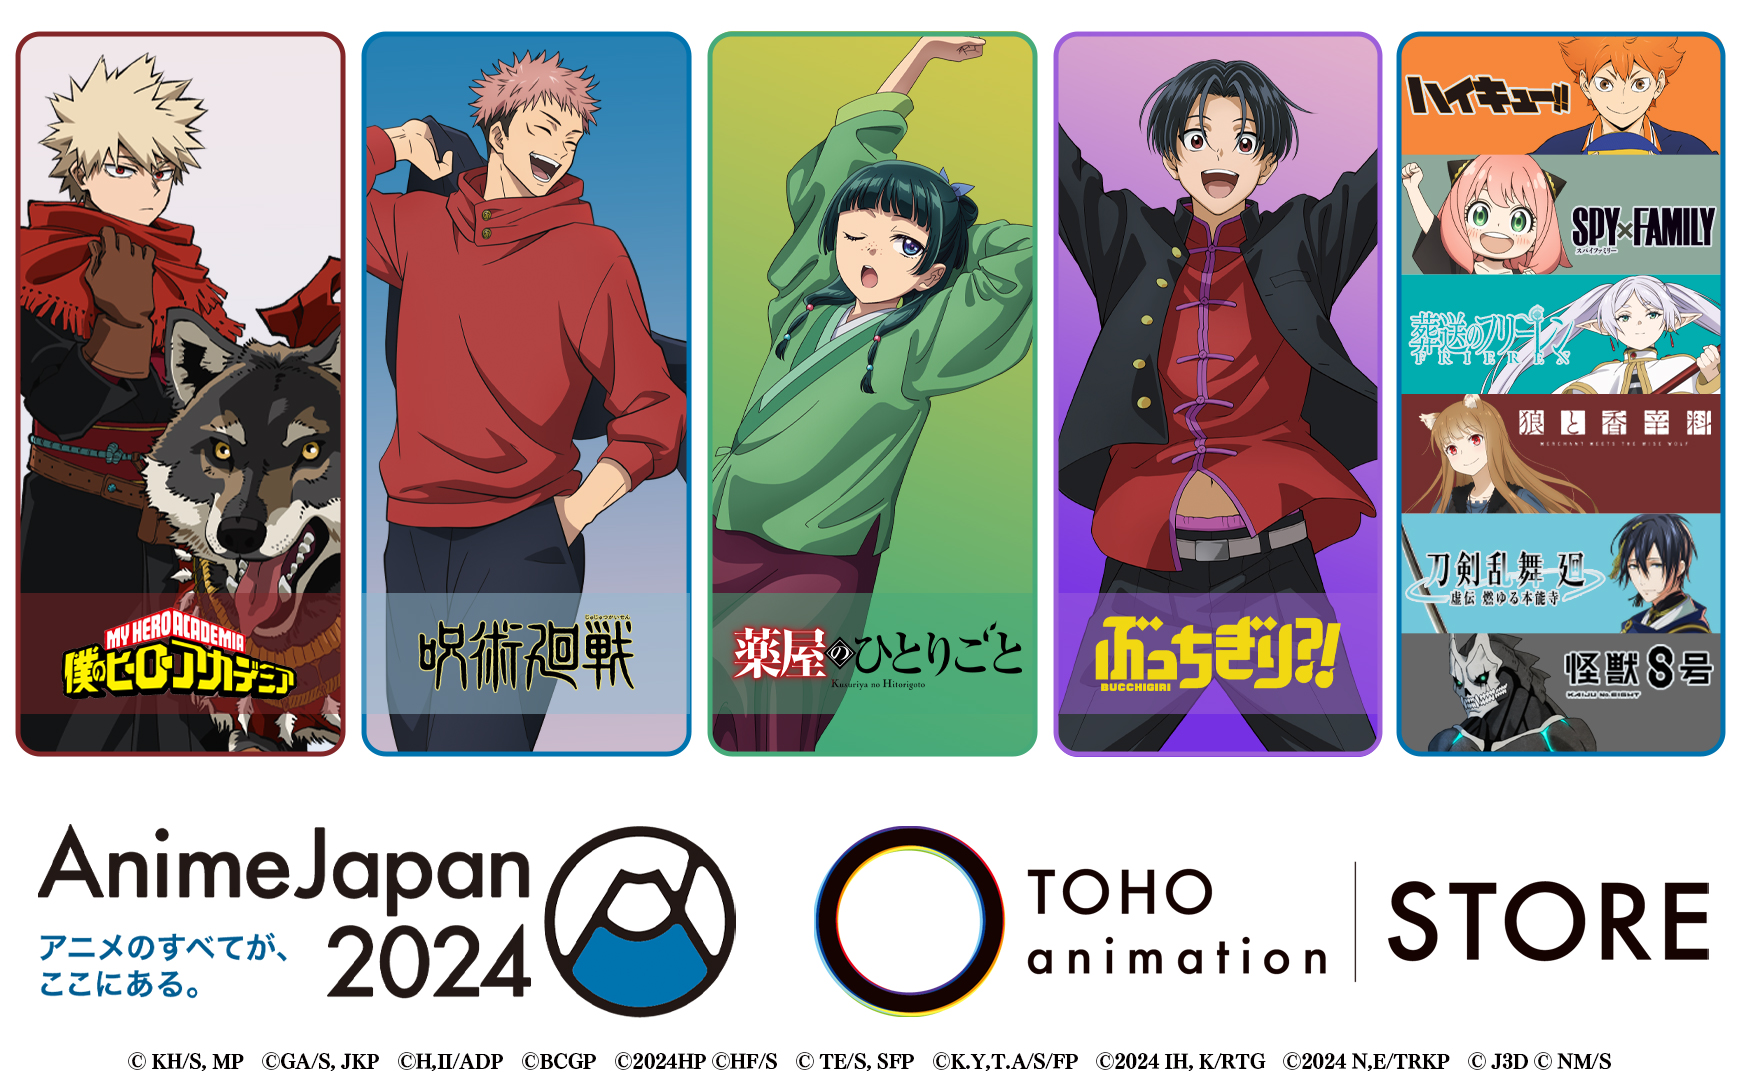 「TOHO animation」が「AnimeJapan 2024」に大型ブースを出展 